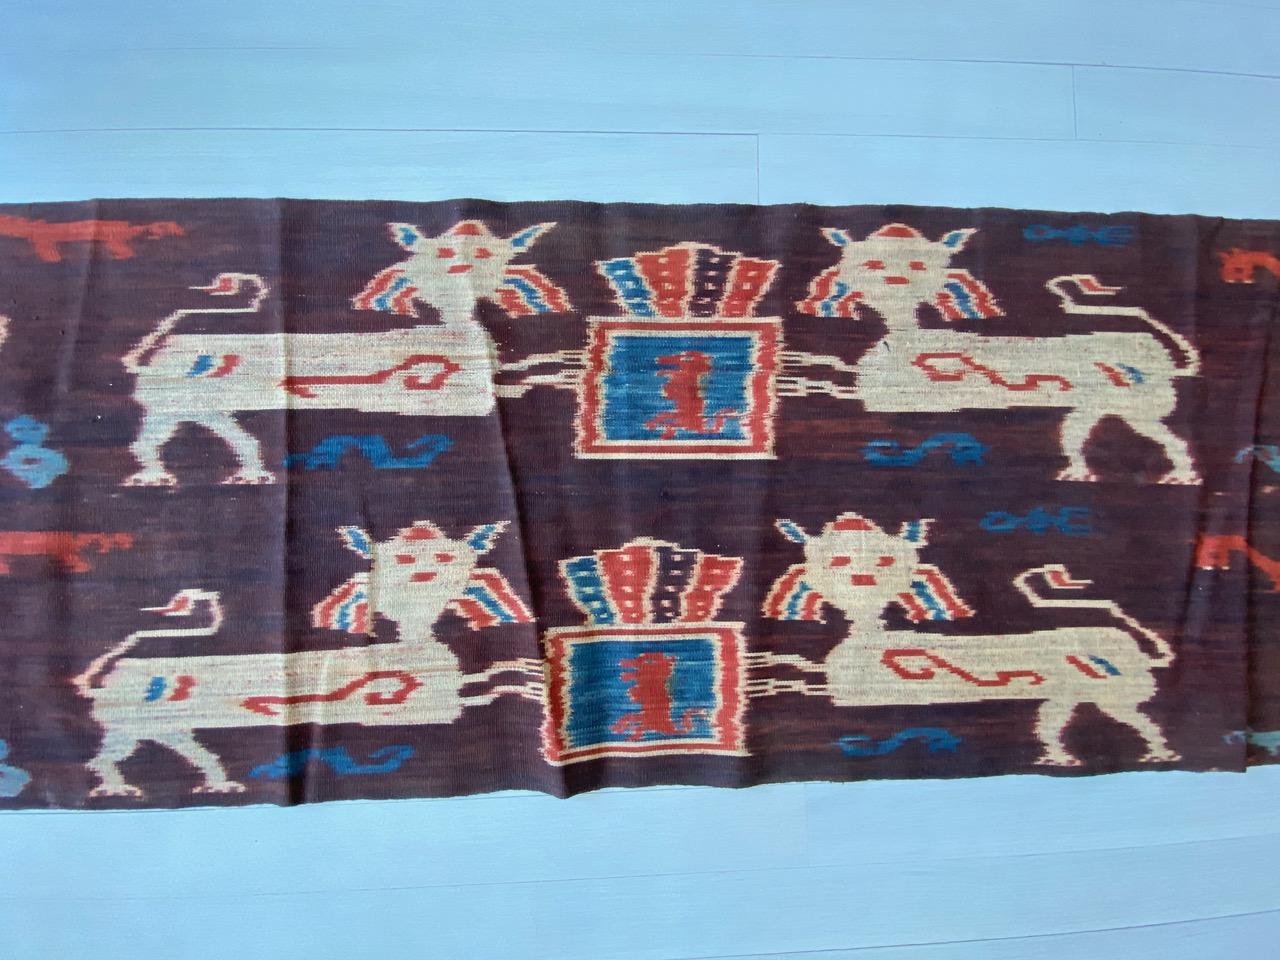 Unglaublich langes, seltenes Ikat von der Insel Sumba. Ikat ist eine alte Technik, mit der Textilien mit Mustern versehen werden. Die Muster werden in den Garnen und nicht auf dem fertigen Stoff erzeugt, so dass beide Seiten mit kräftigen,